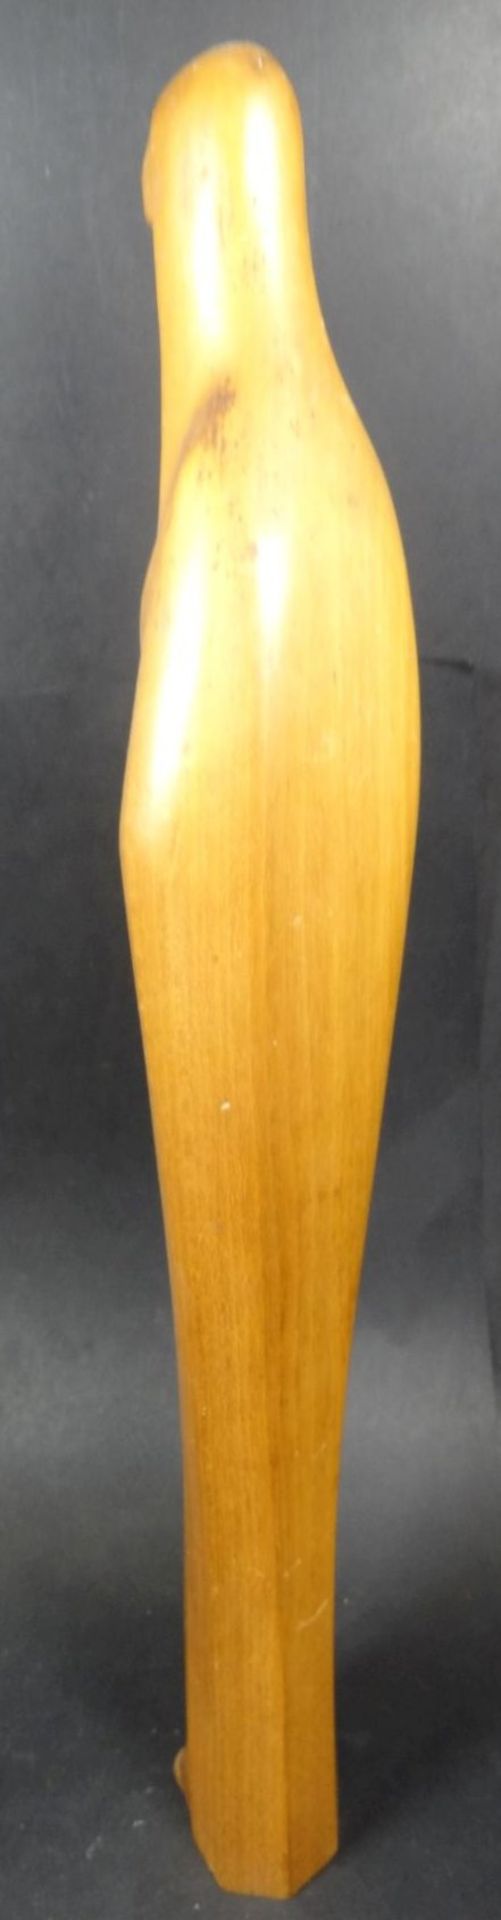 schlanke Holz-Madonna mit Kind, H-40 cm, kl. Abpltzer am Kleidersaum- - -22.61 % buyer's premium - Bild 4 aus 6